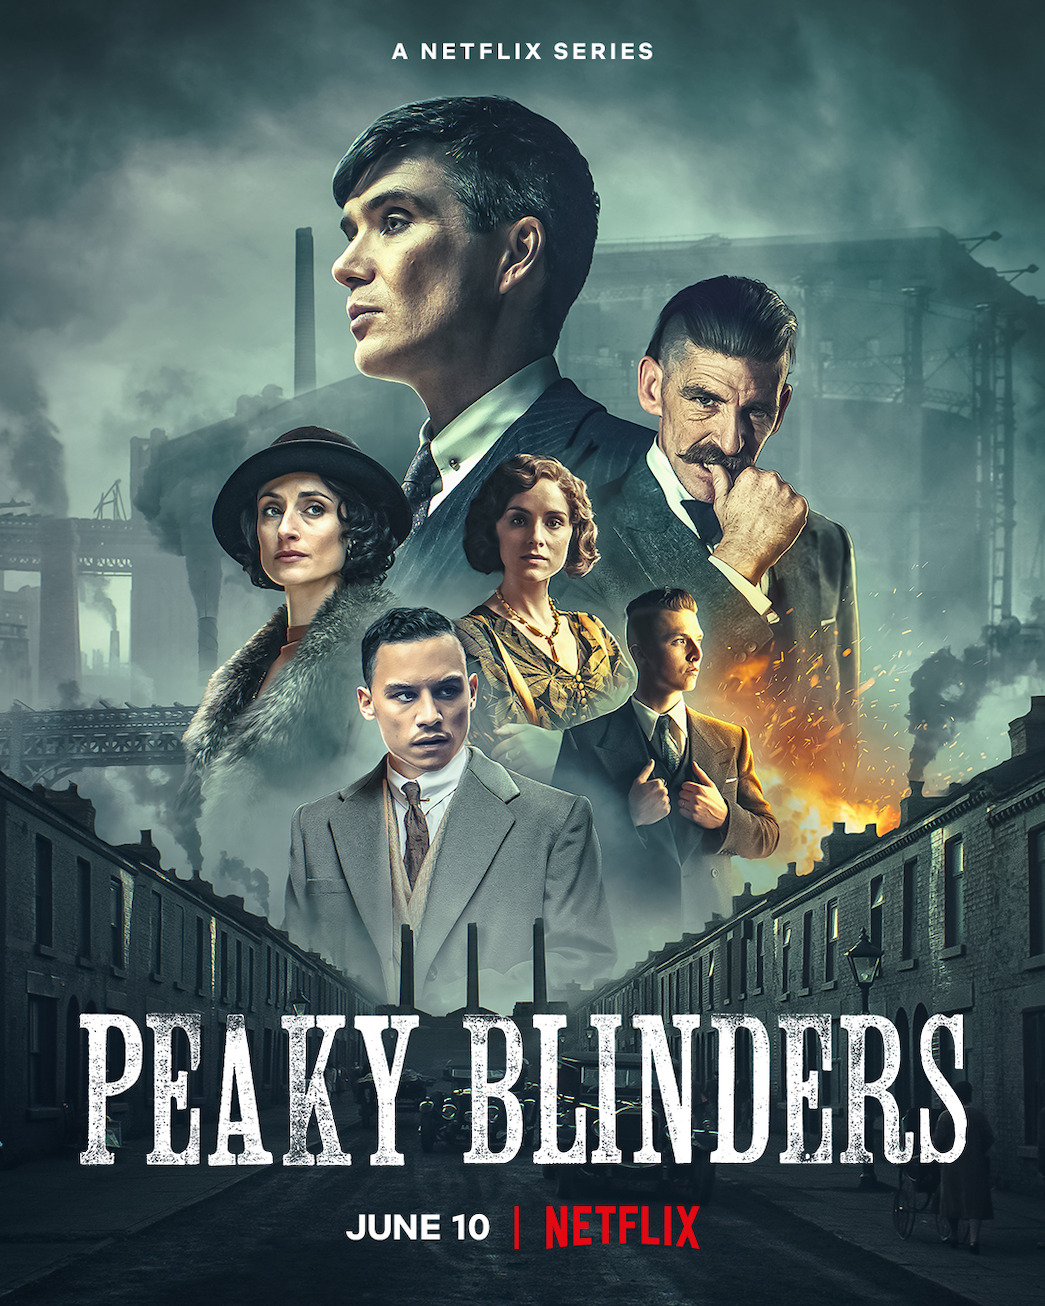 Peaky Blinders Season 6 Confirmed to Return on Feb. 27, 2022